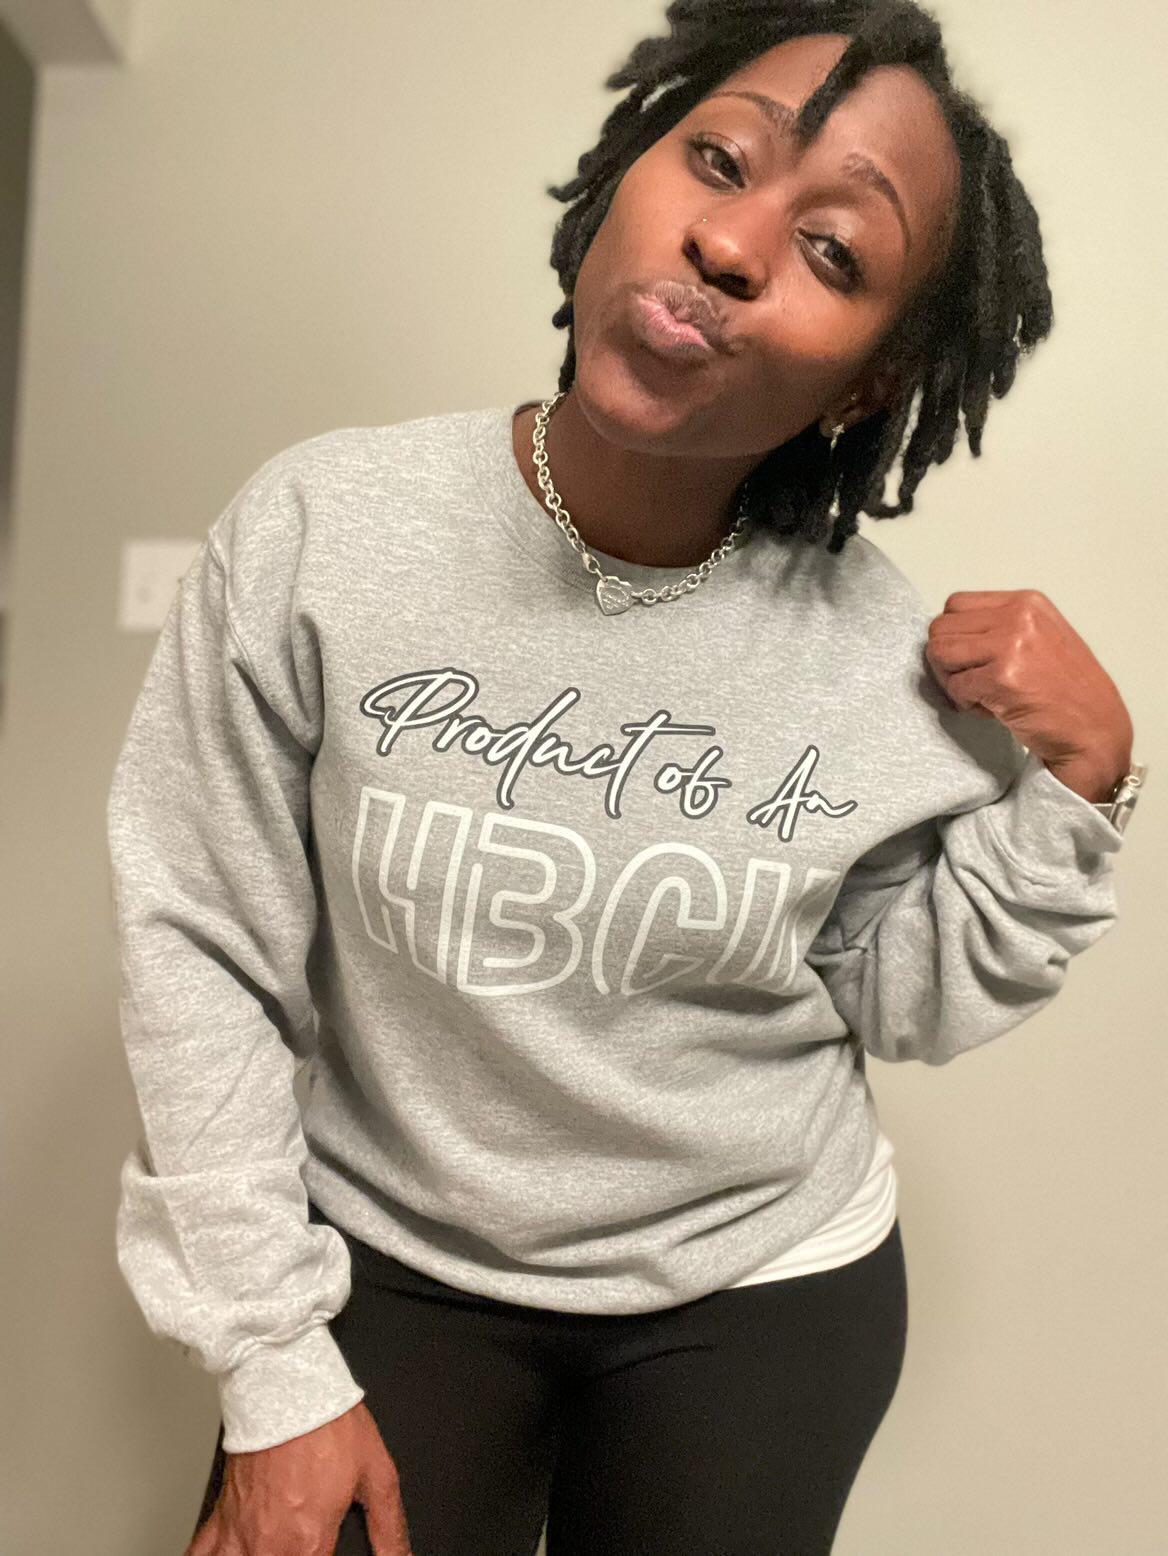 Product of An HBCU Sweatshirt - HBCU Shirts, HBCU Apparel, Black Colleges, HBCU Alumni